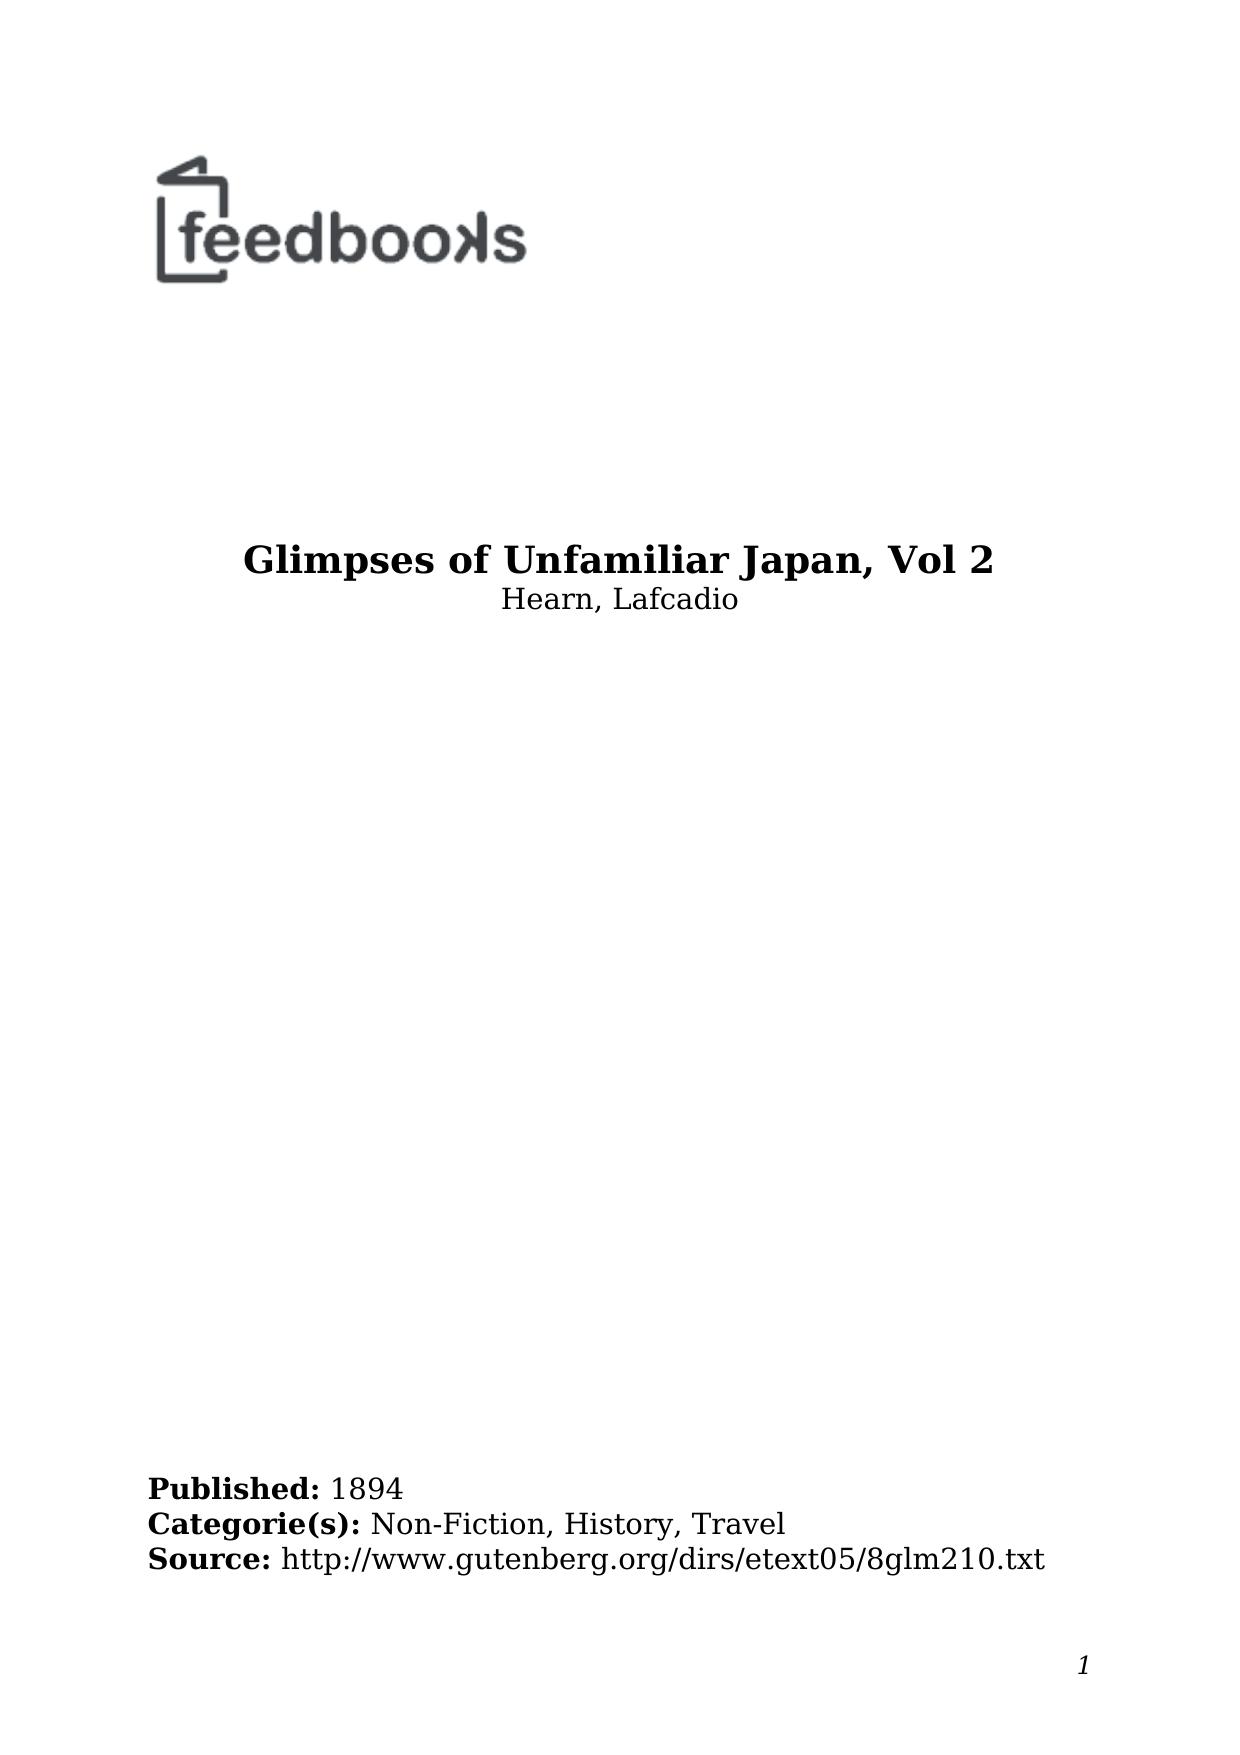 Glimpsesof Unfimiliar Japan Volume 2